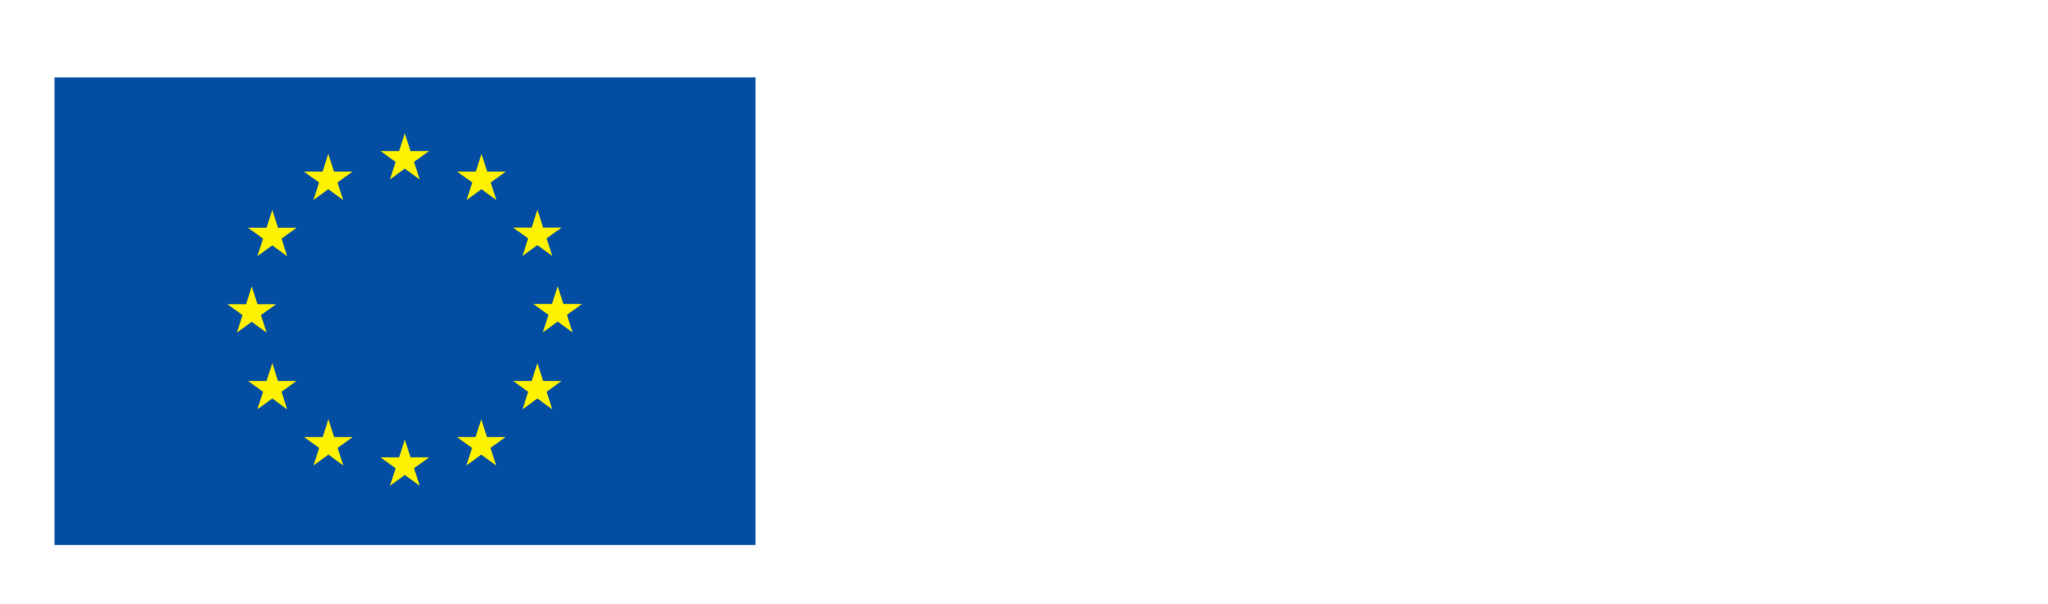 Bandera de la UE Financiado por la Unión Europea Next Generation EU